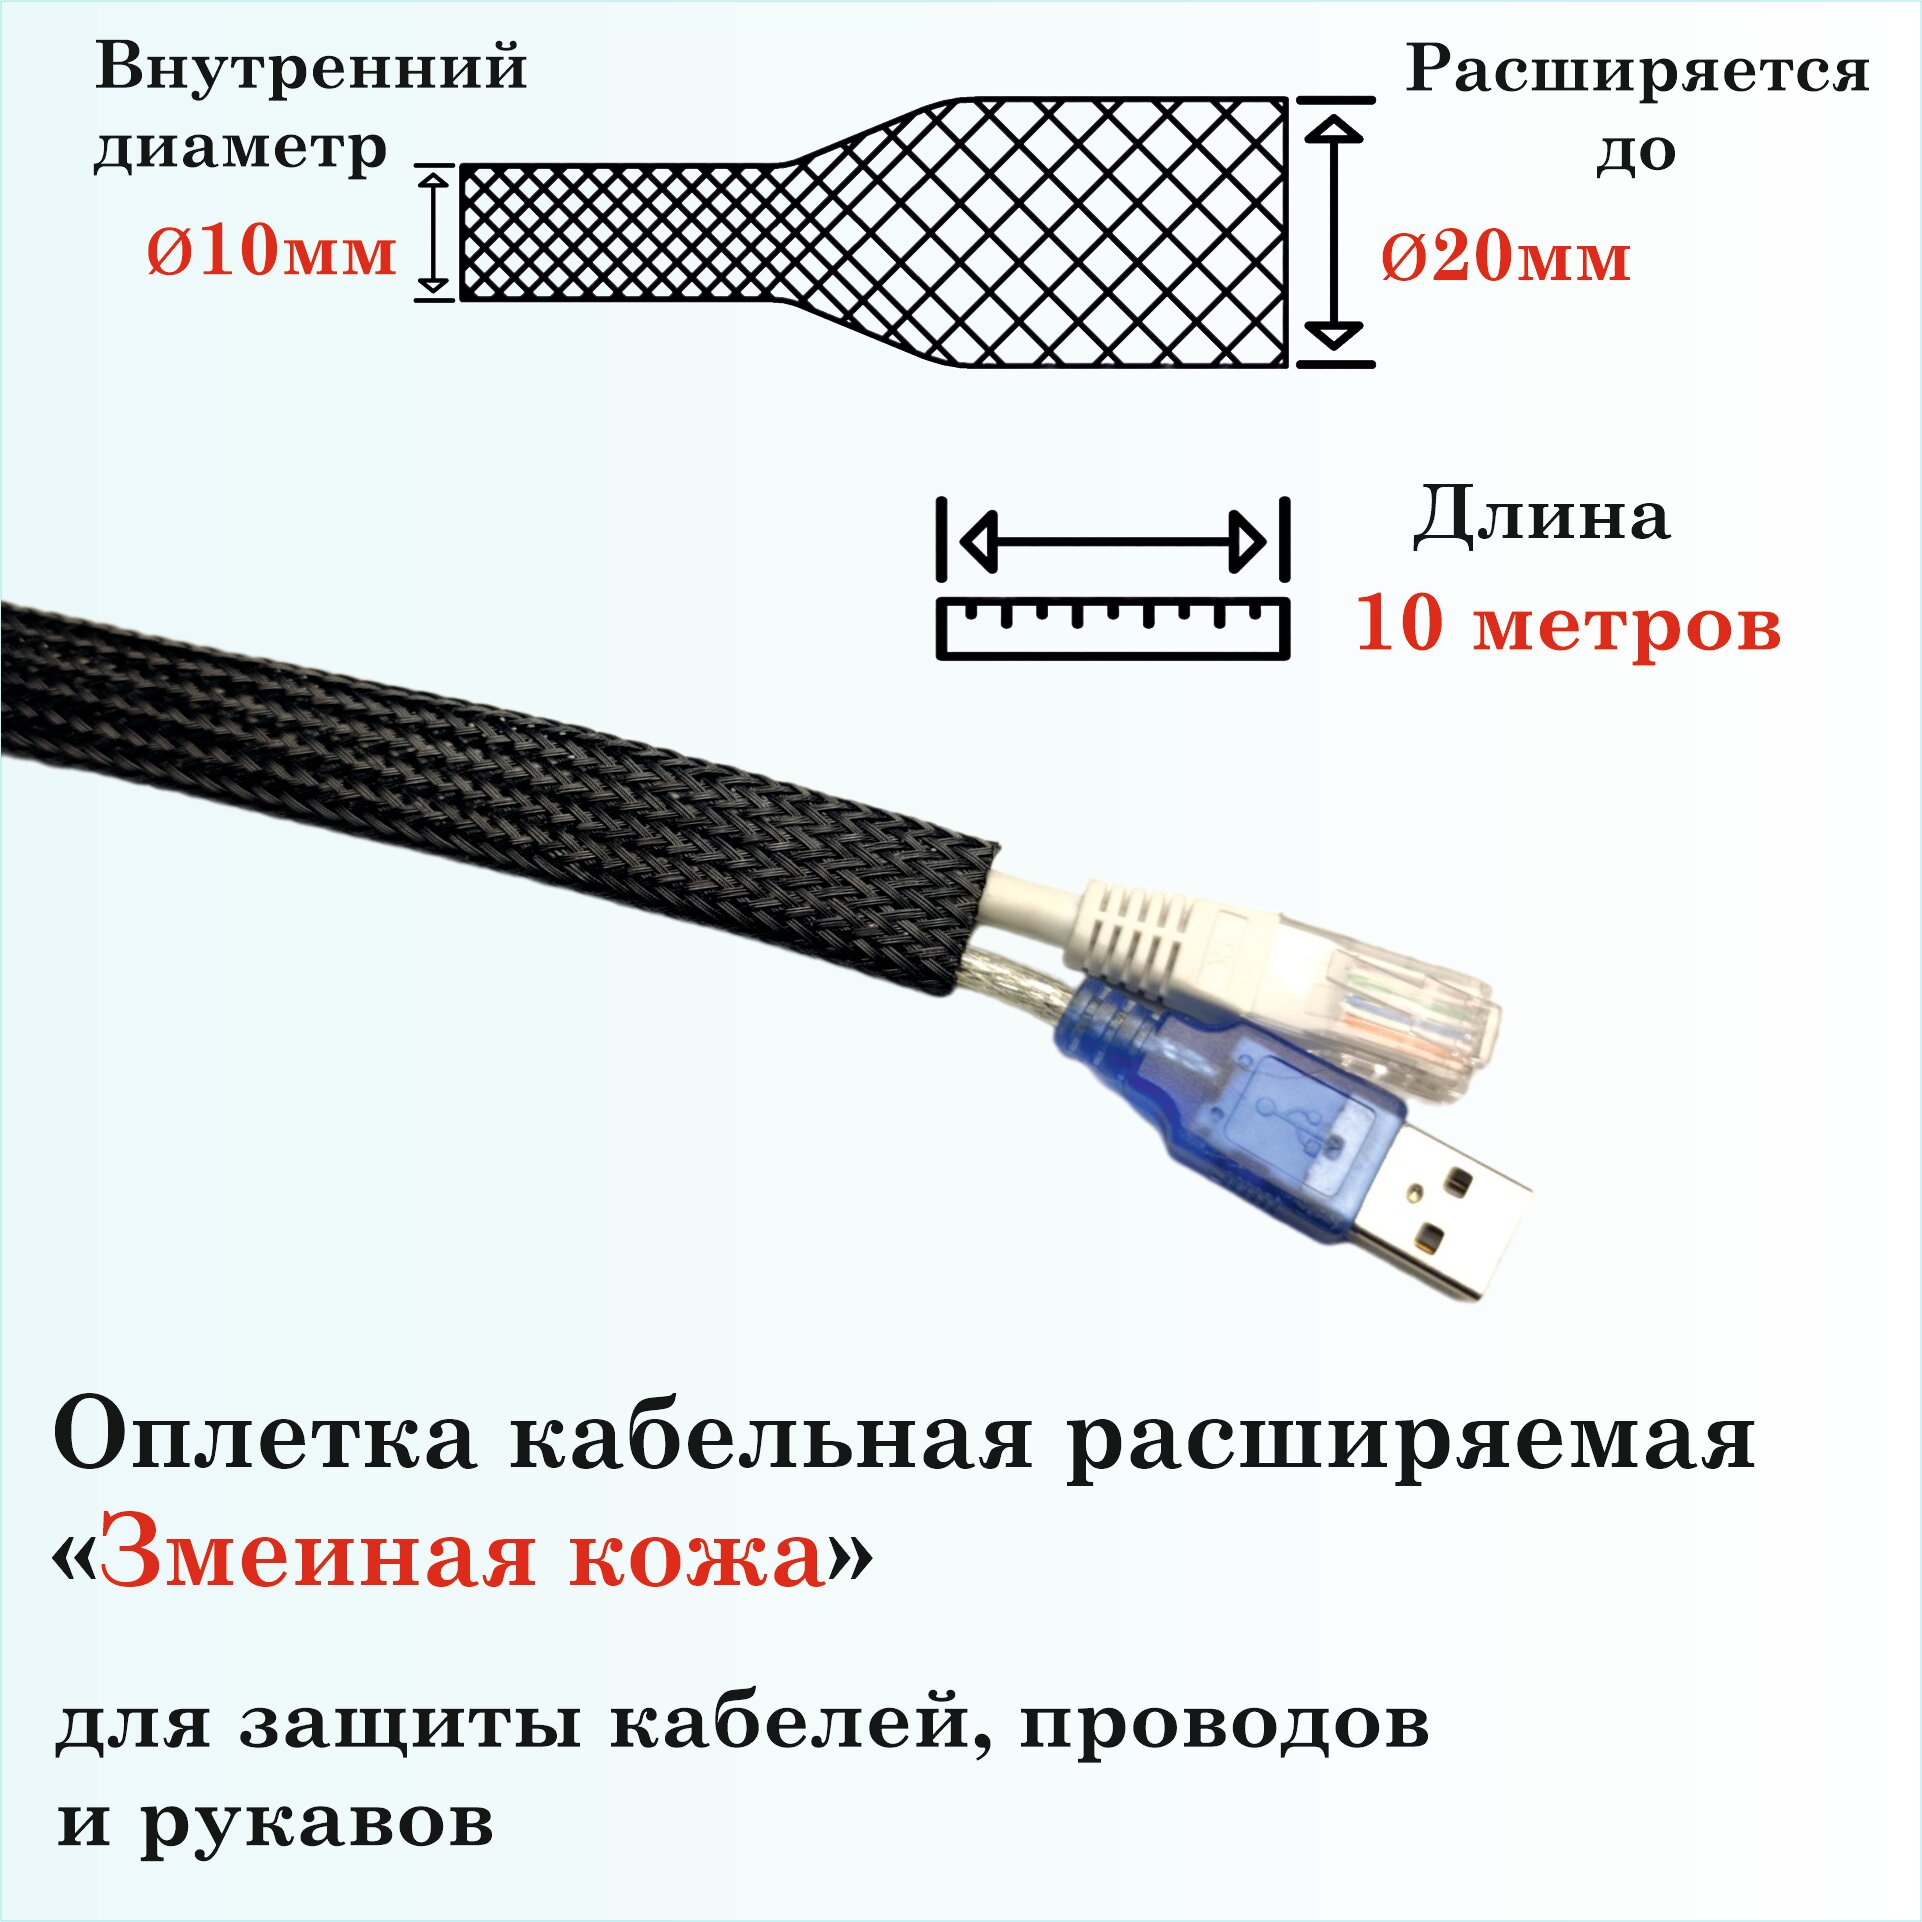 Оплетка кабельная расширяемая для защиты кабелей и проводов "Змеиная кожа" 10мм 2.5м желтая